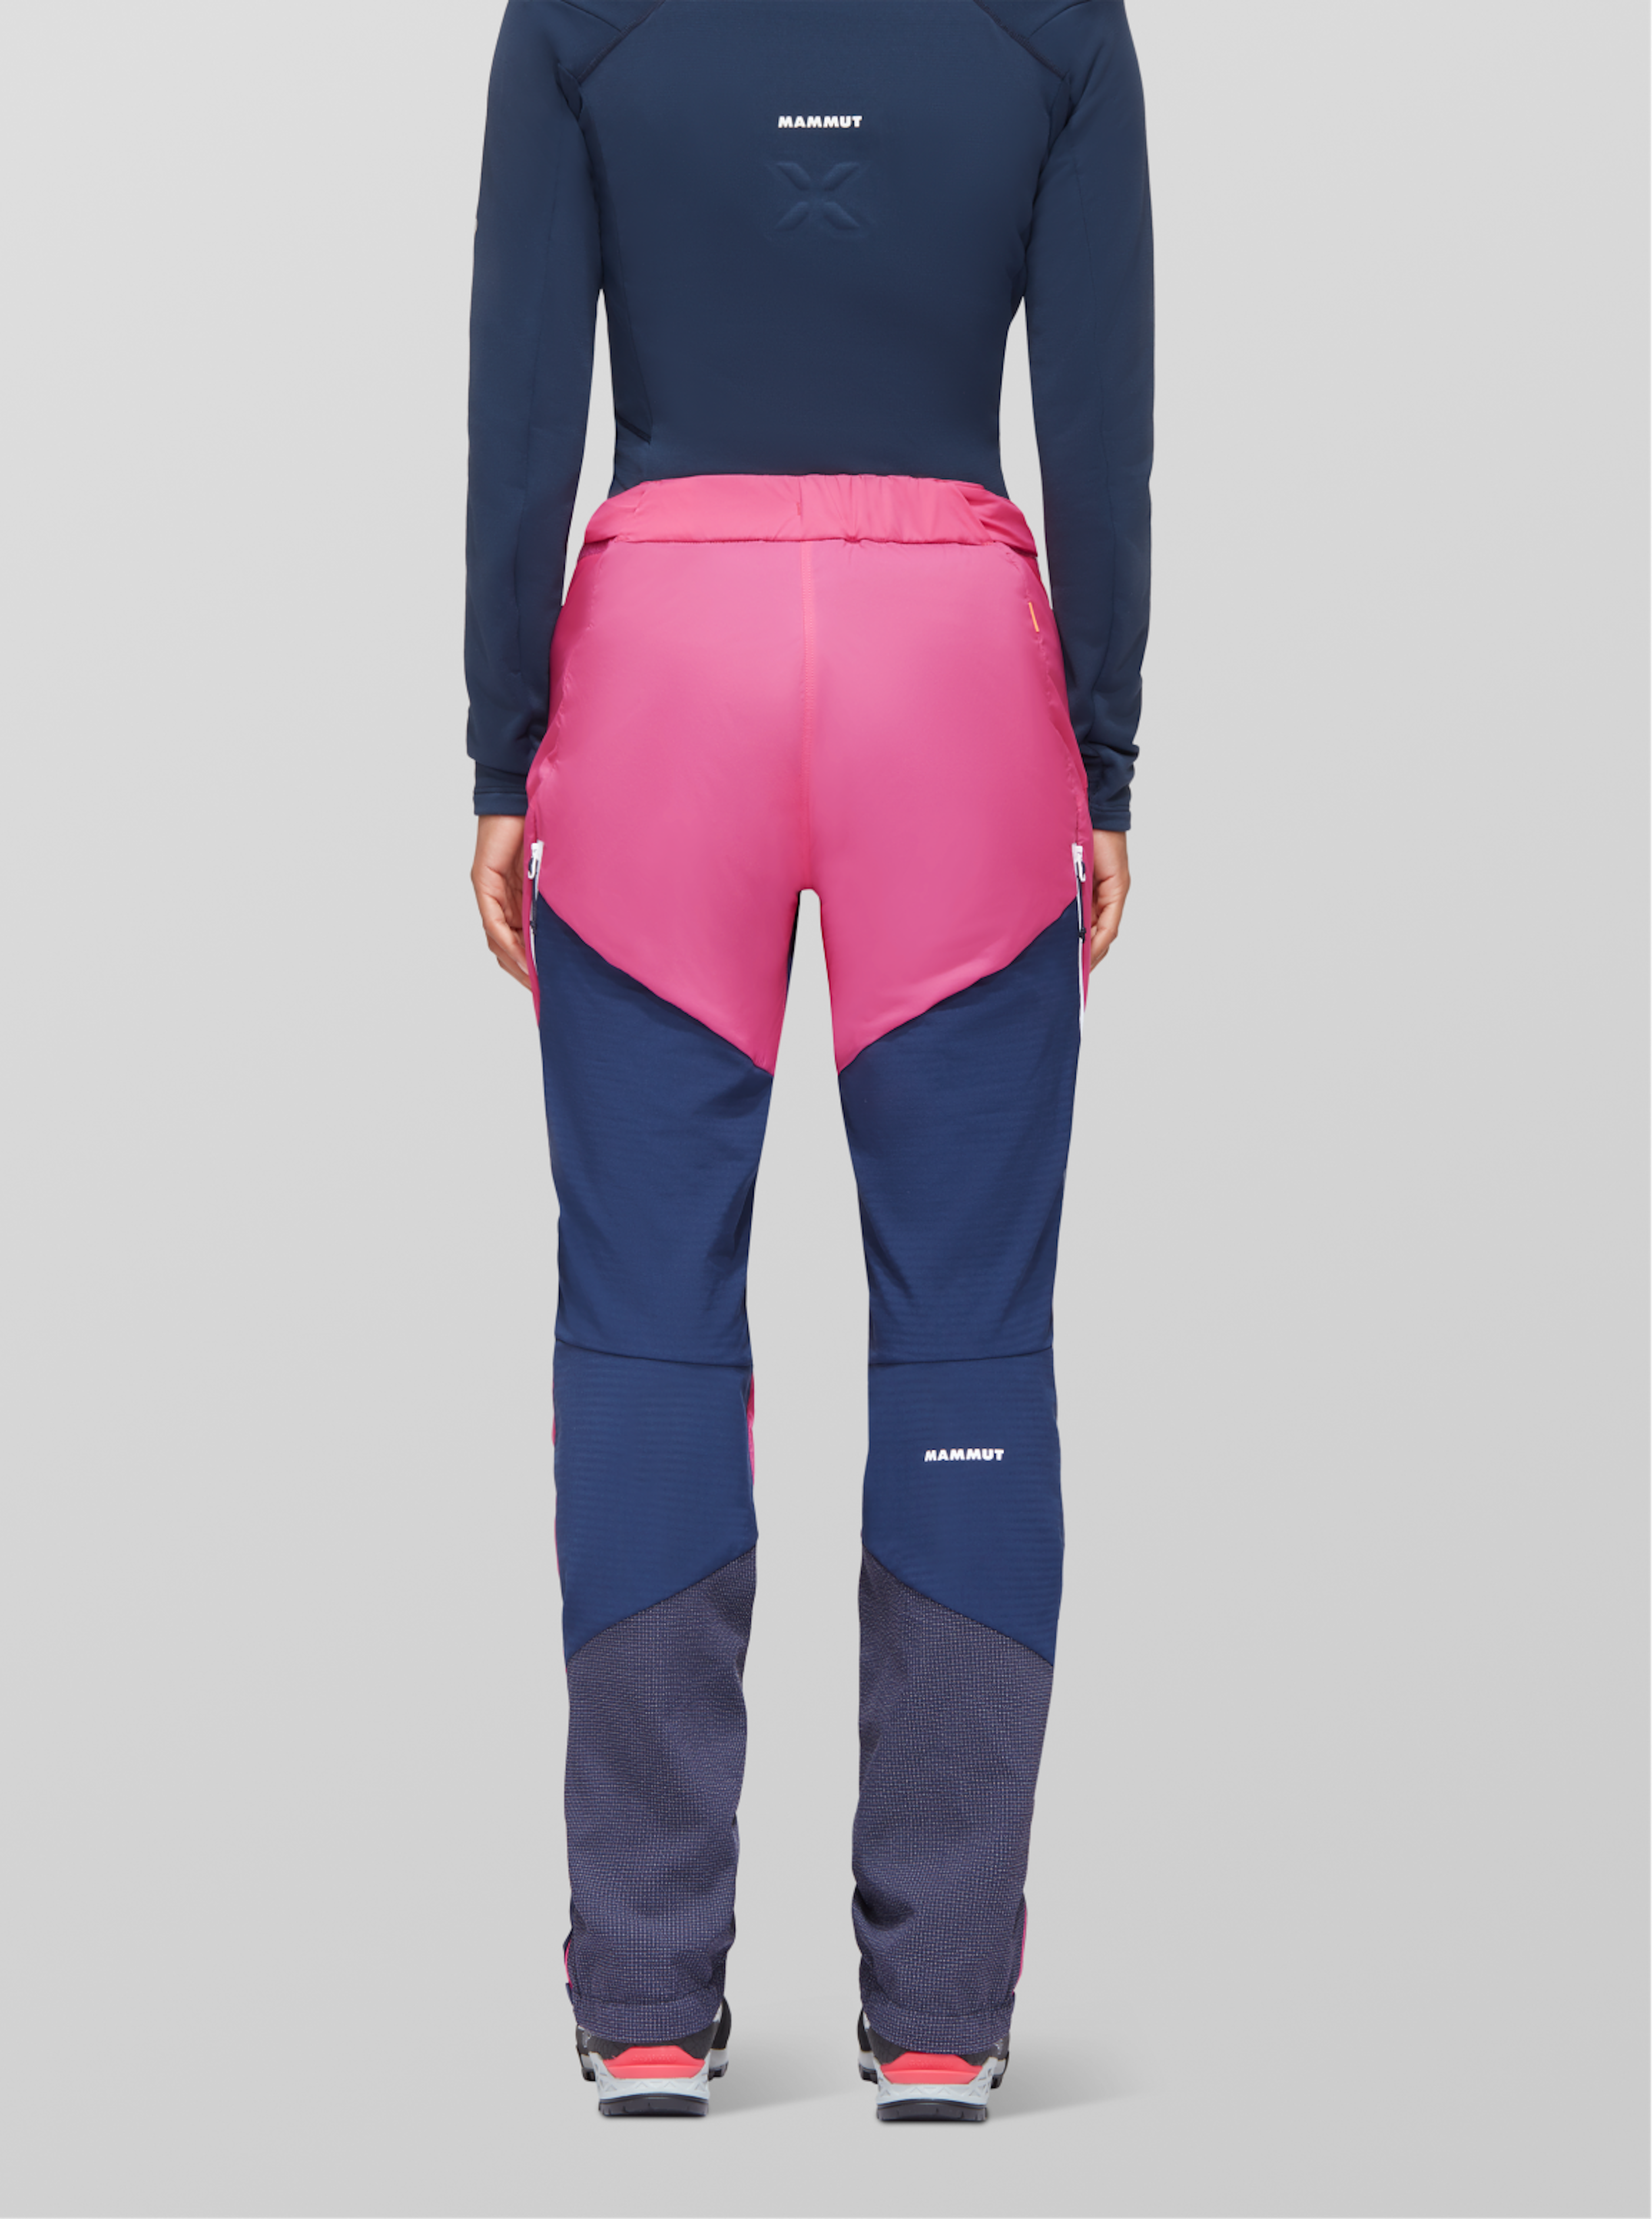 Mammut Hose für Frauen in blau/pink